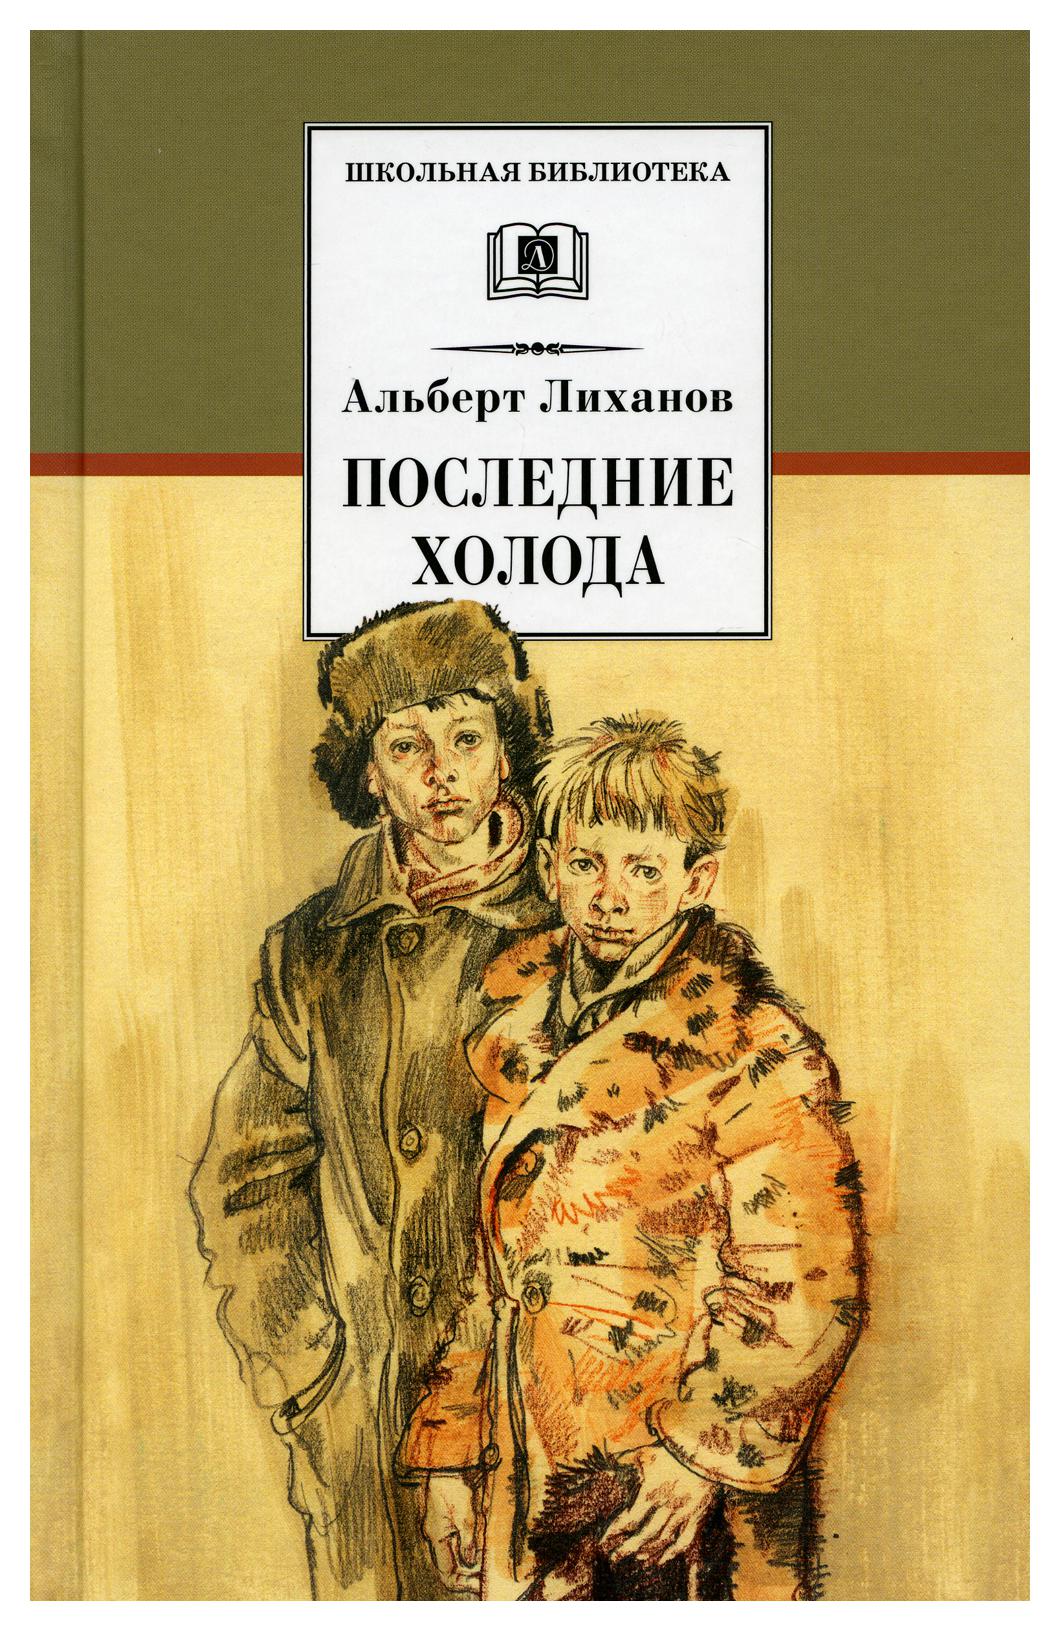 Книги жанра повесть. Лиханов последние холода книга. Последние холода Лиханов иллюстрации.